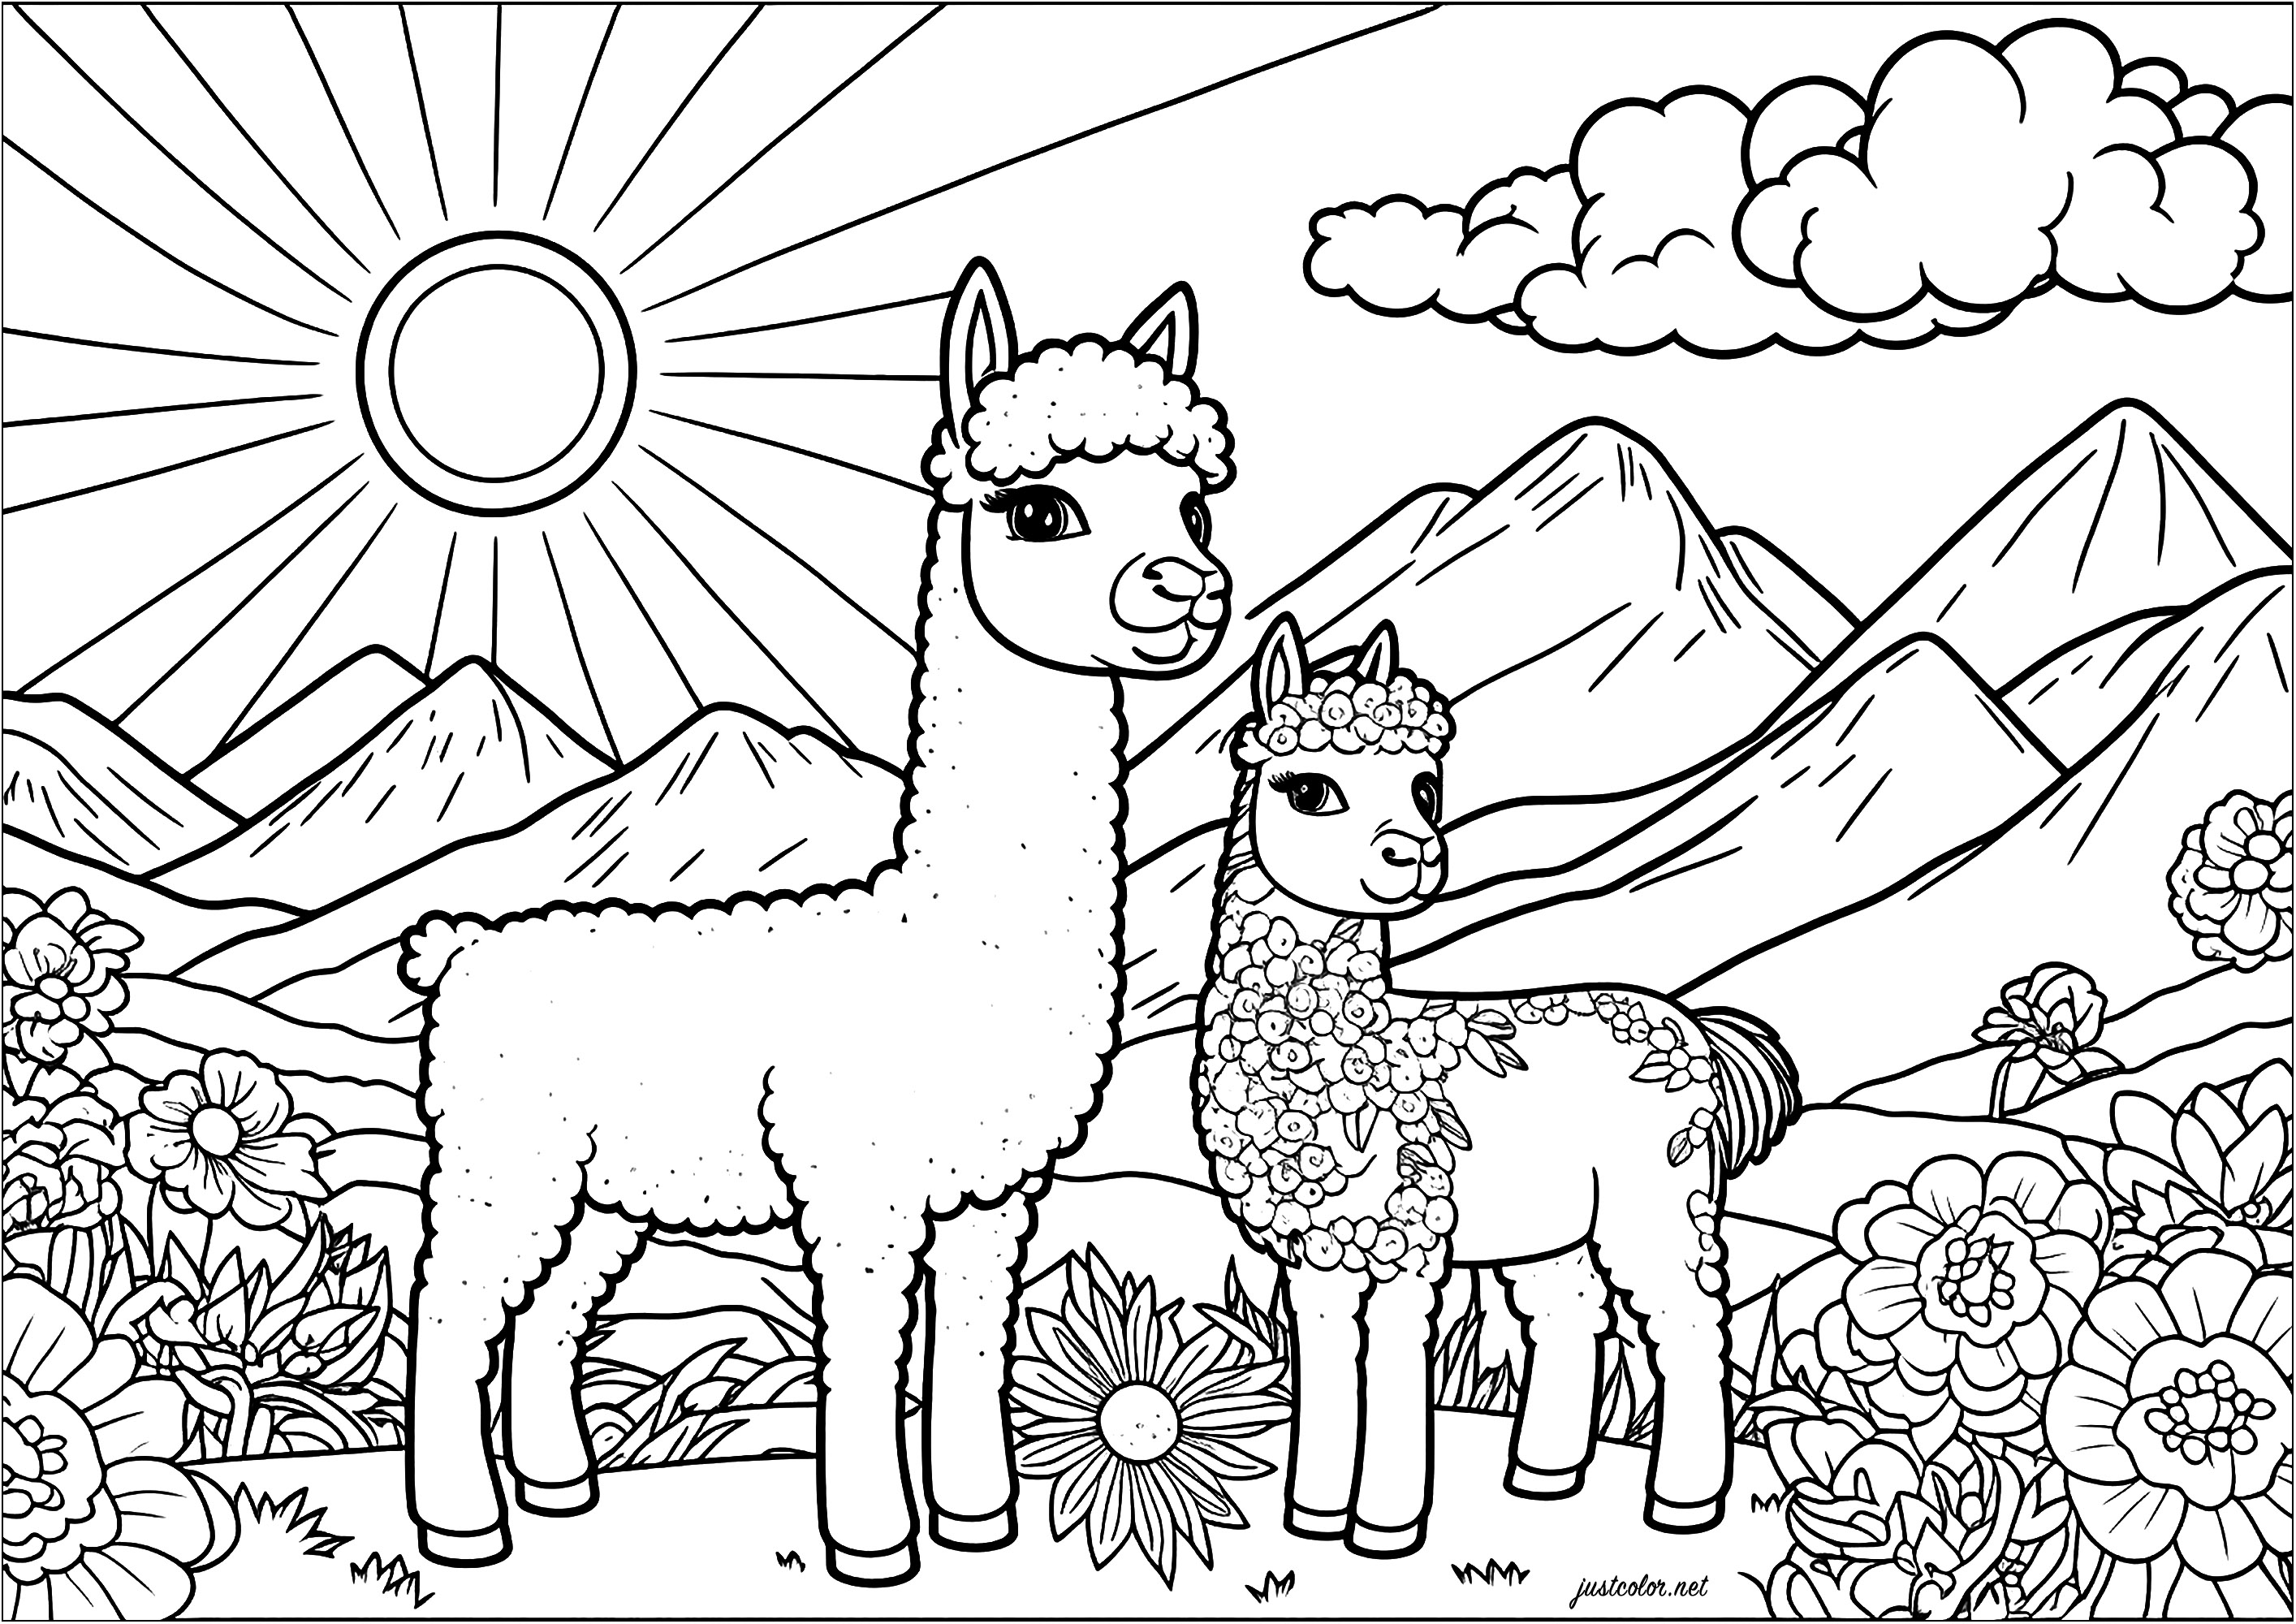 Colorare due lama in un paesaggio da sogno. La pagina da colorare 'Due lama: madre e vitello' è un disegno molto semplice, ma ricco di dettagli. Il paesaggio montuoso sullo sfondo e i tanti fiori saranno un vero piacere da colorare.